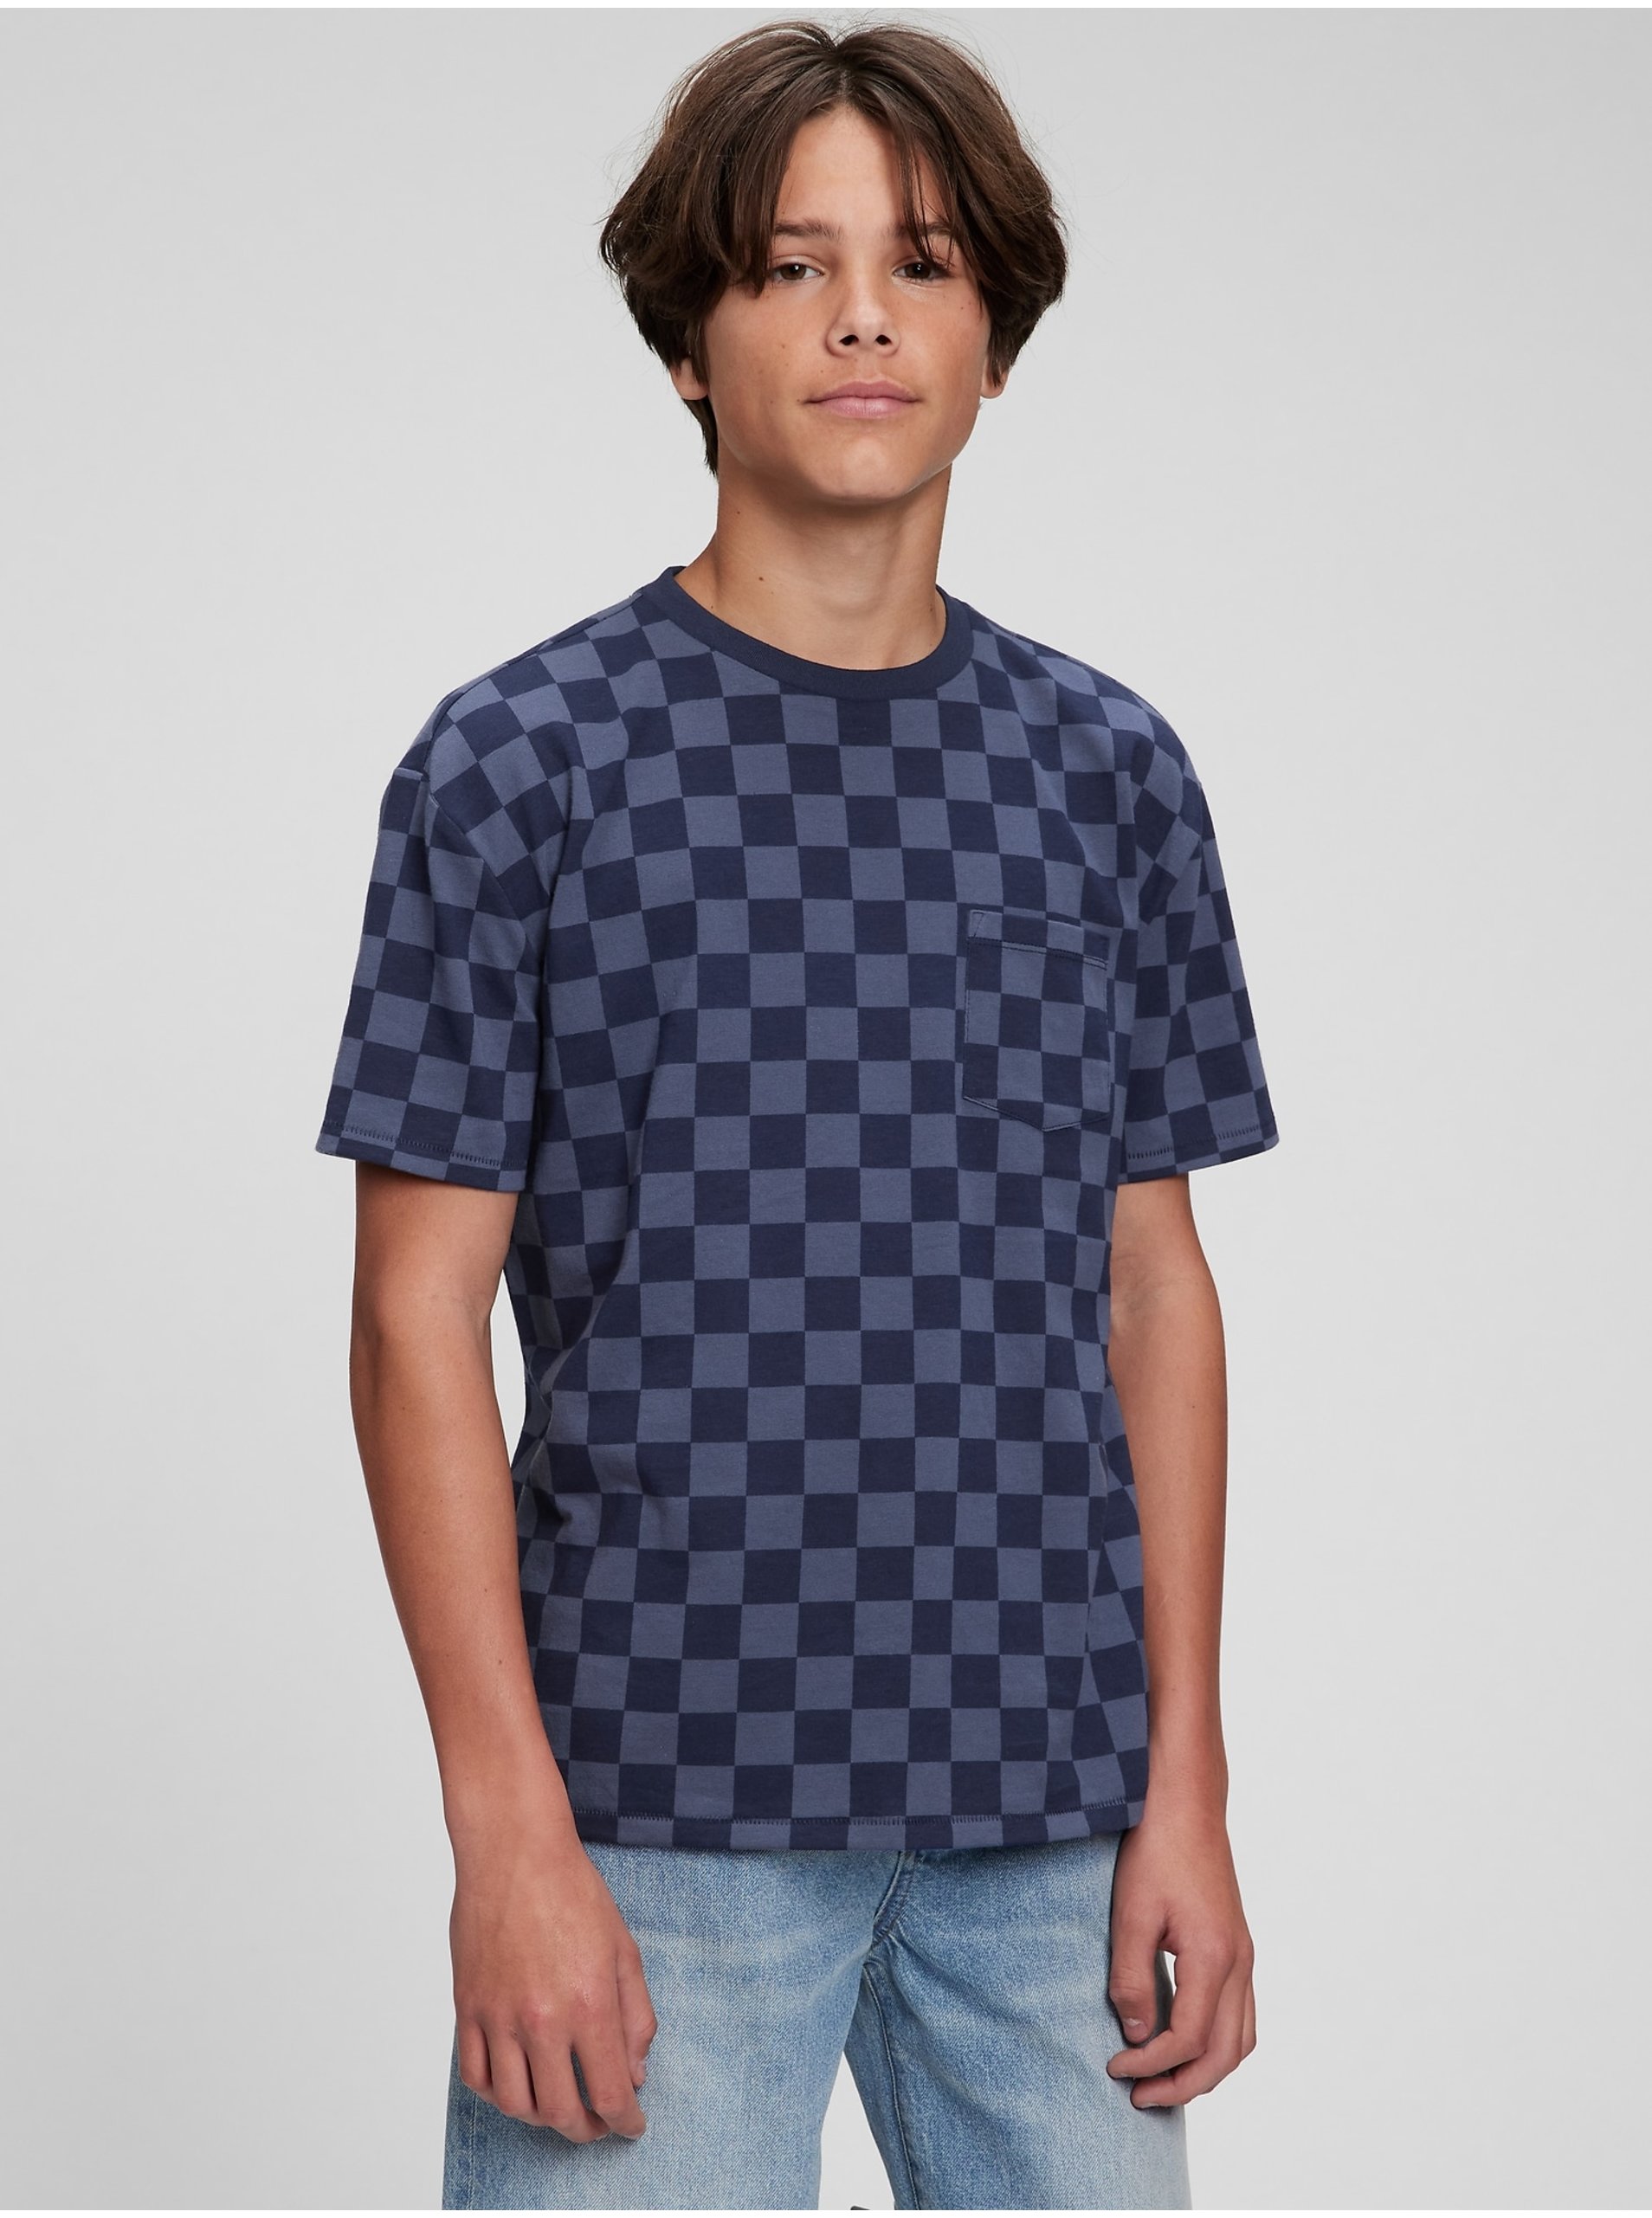 Lacno Tmavomodré chlapčenské tričko Teen organic šachovnica GAP